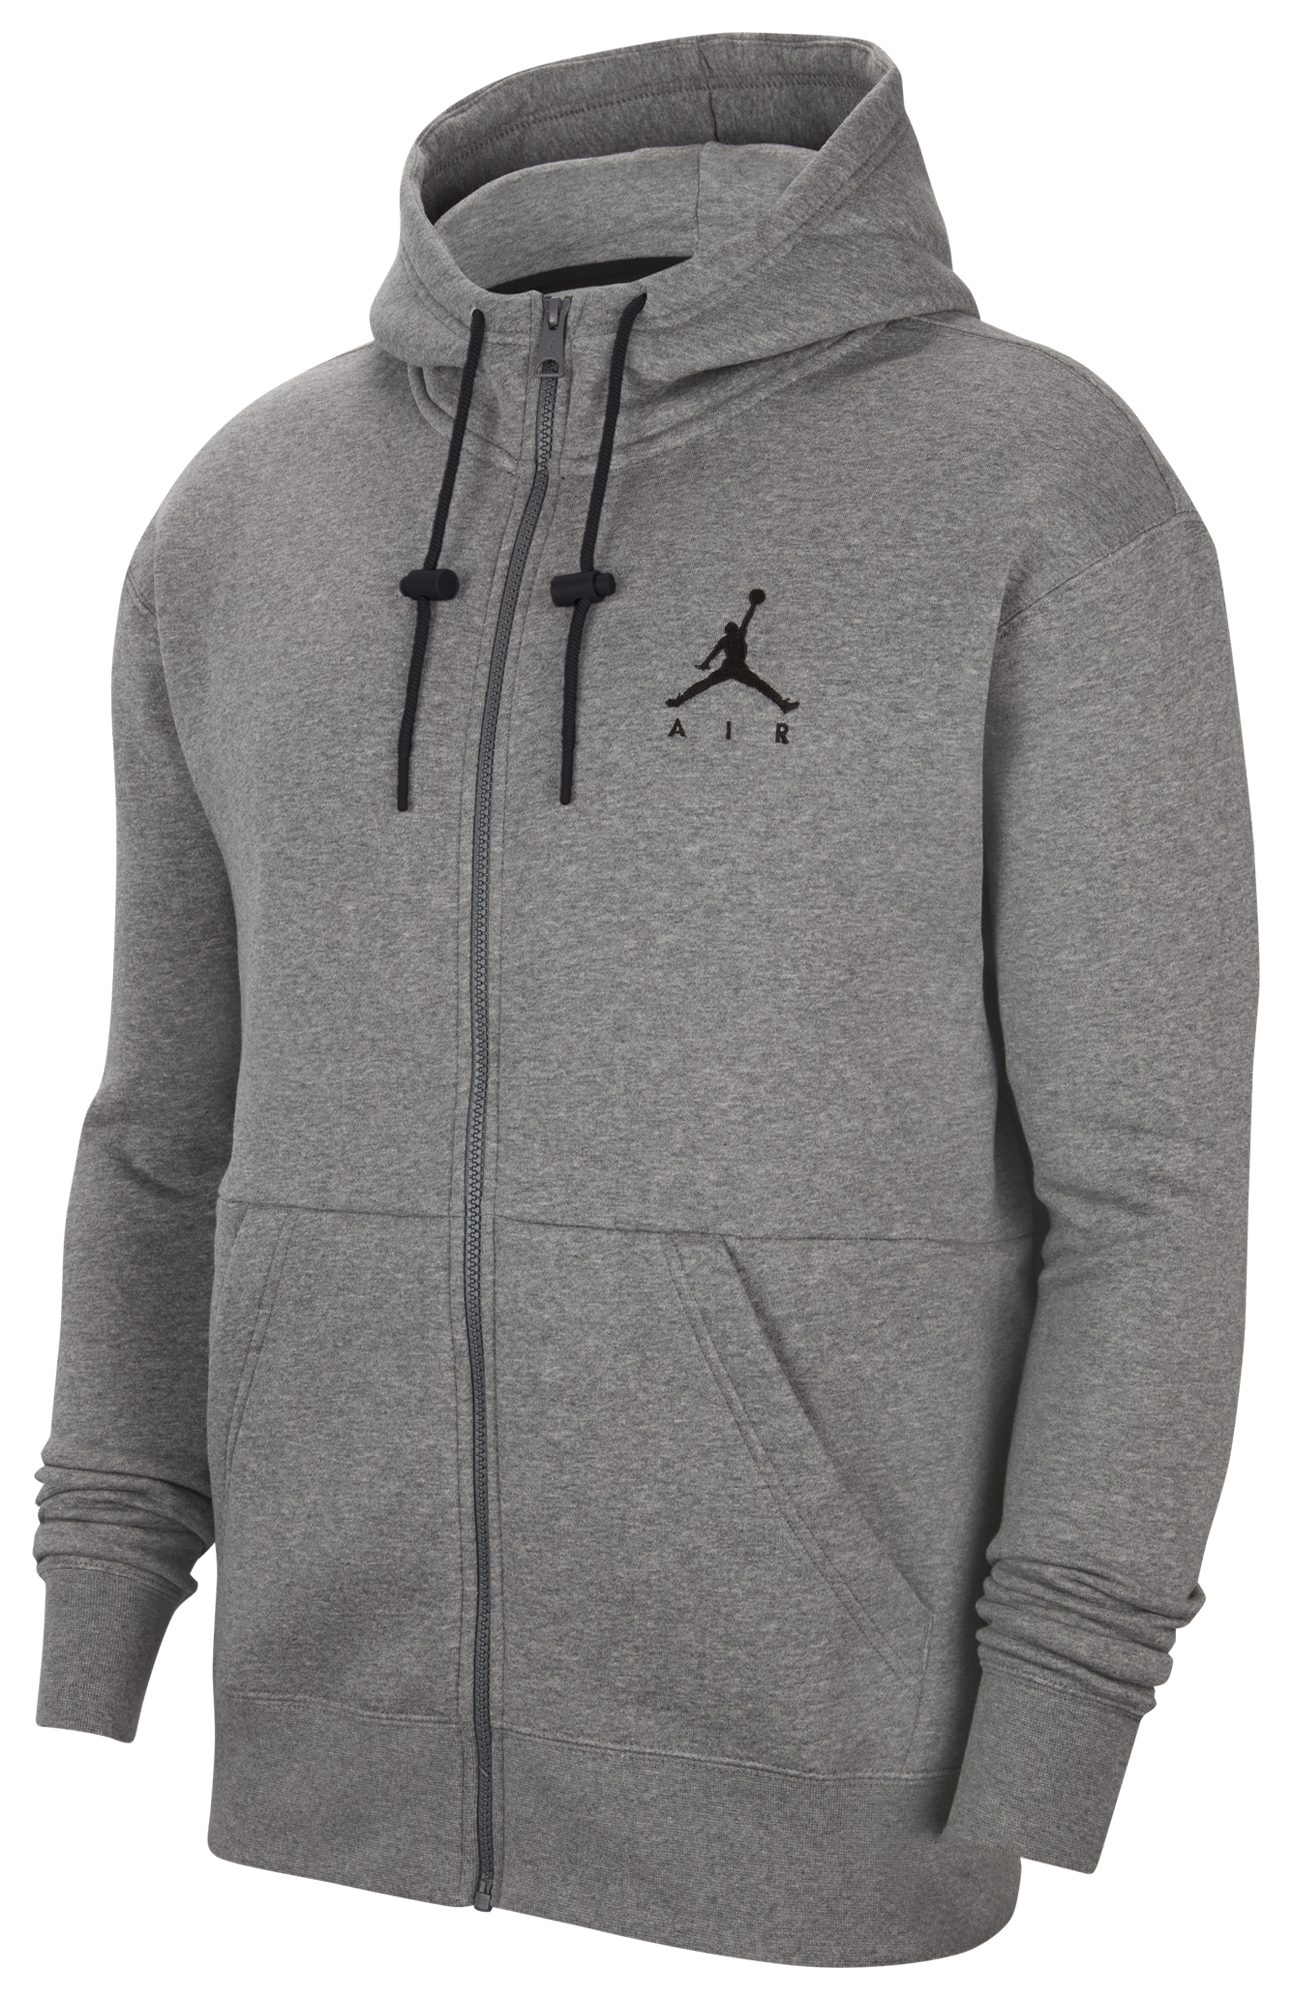 grey and black jordan hoodie